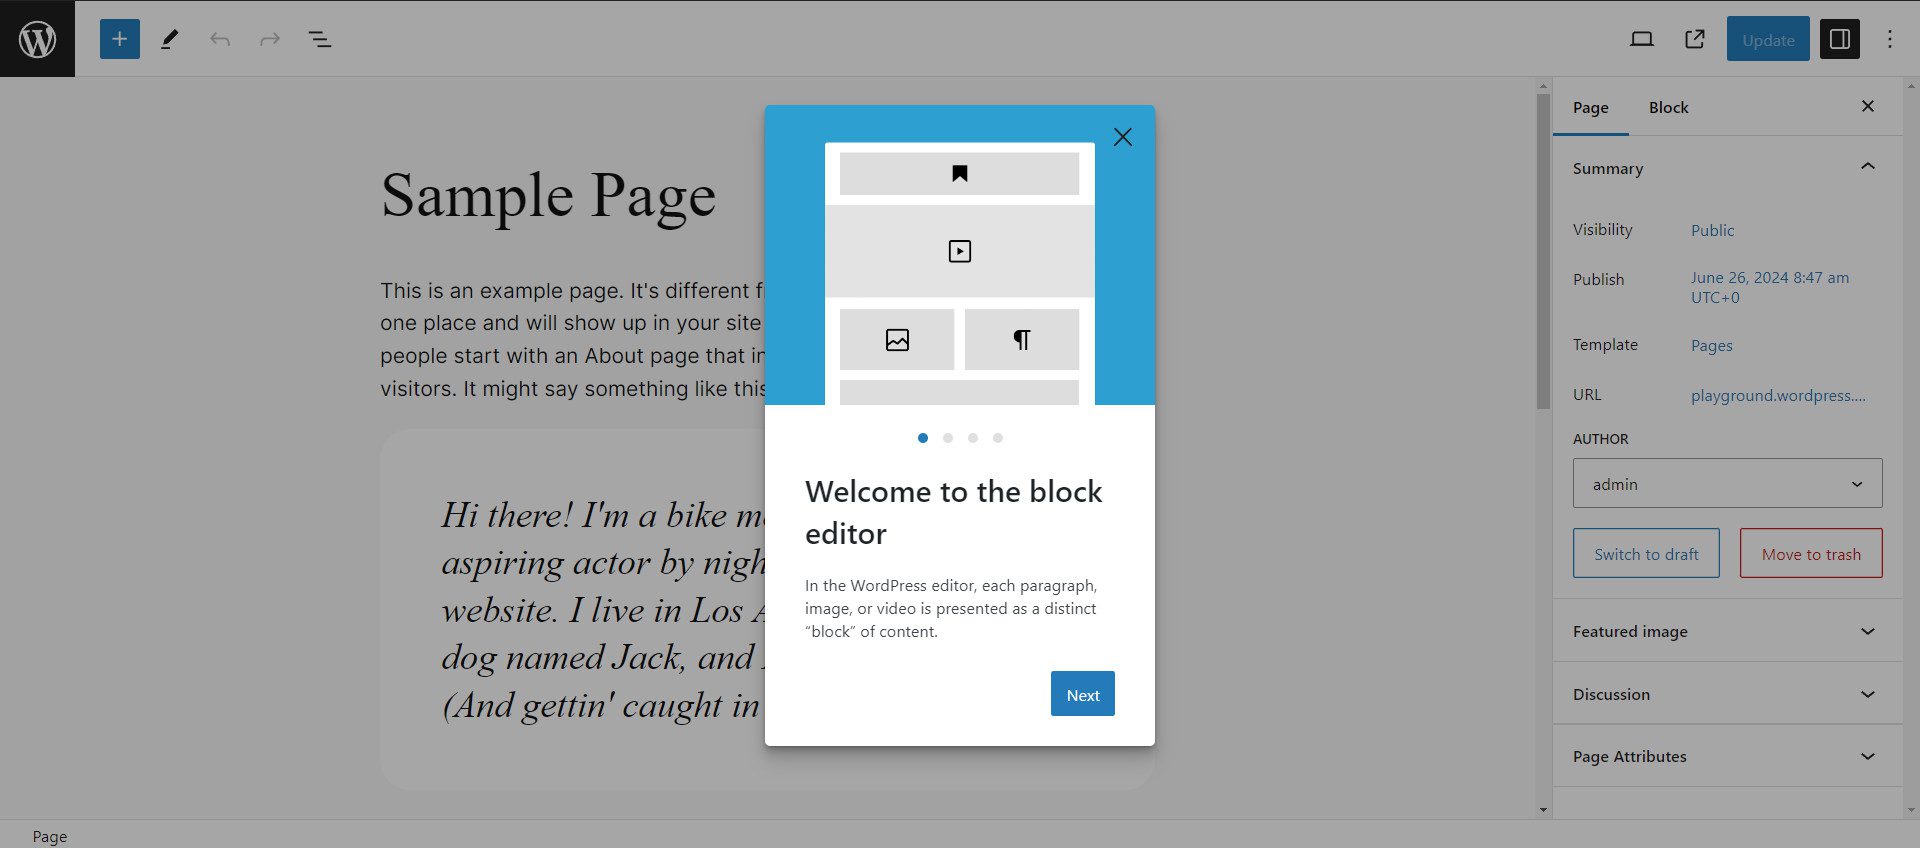 Ecran de întâmpinare a Editorului de blocuri pentru utilizatorii pentru prima dată